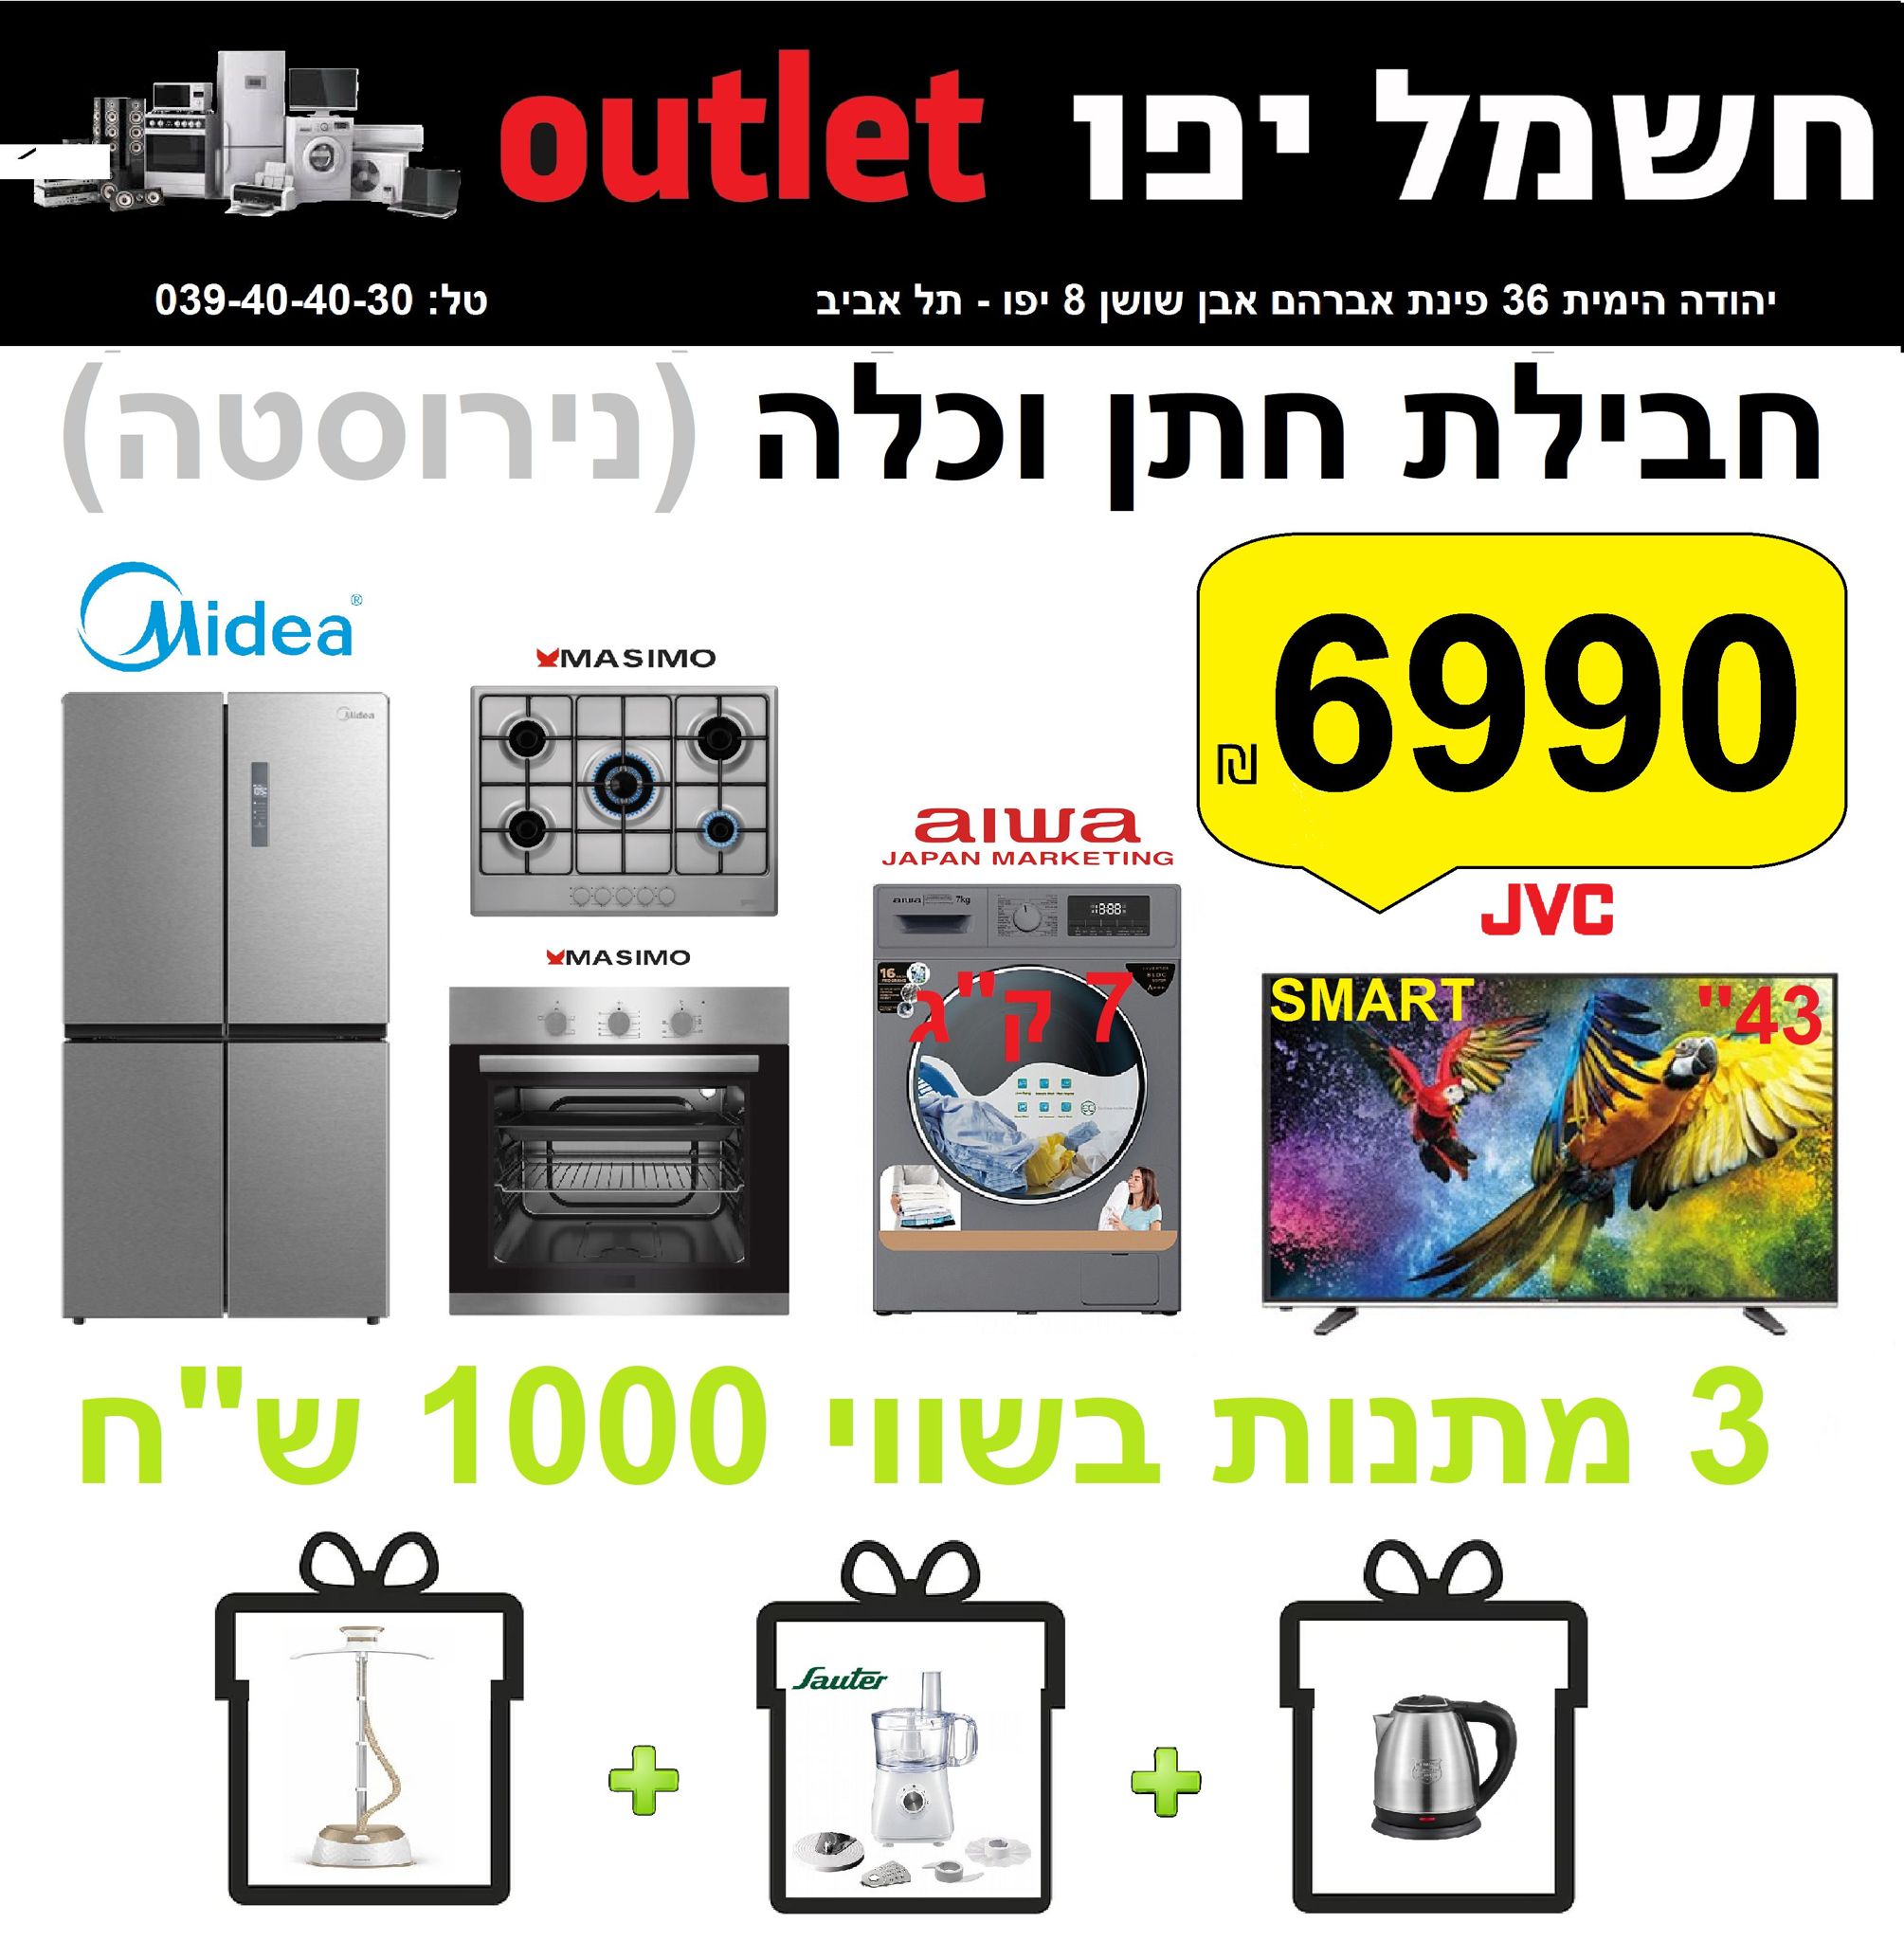 حملة تحطيم الاسعار في صالة كهرباء يافا OUTLET